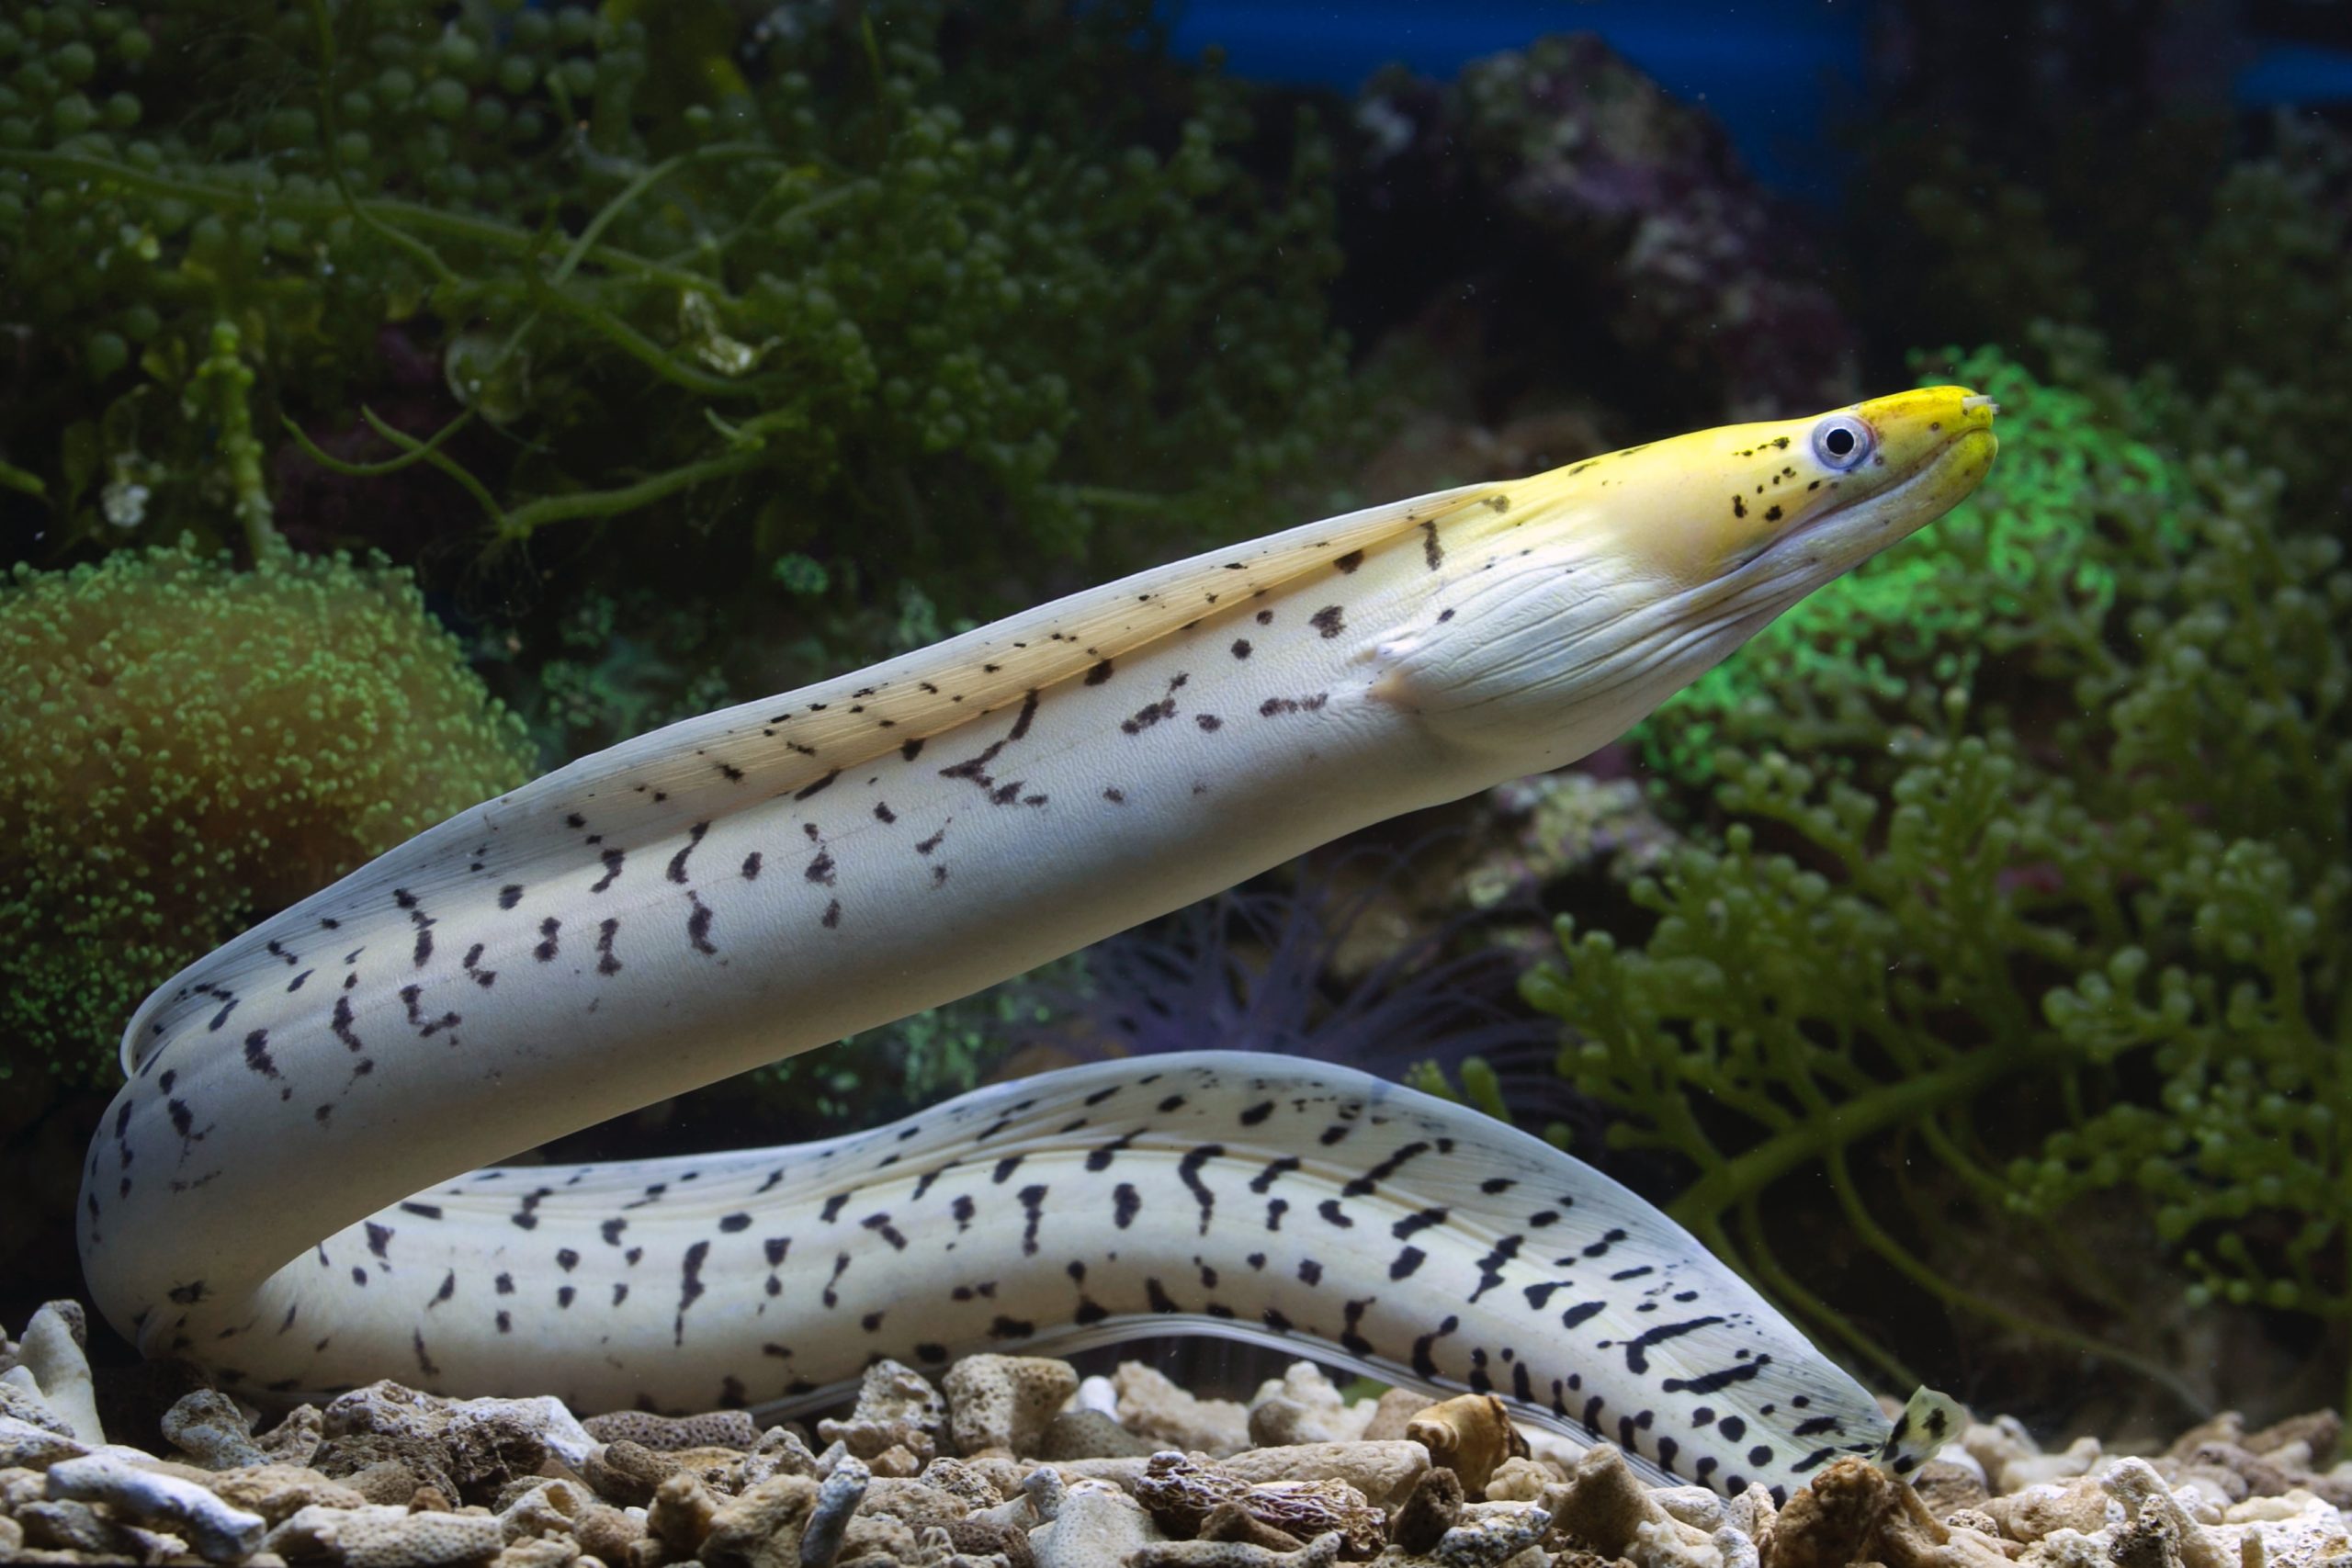 A living eel underwater.